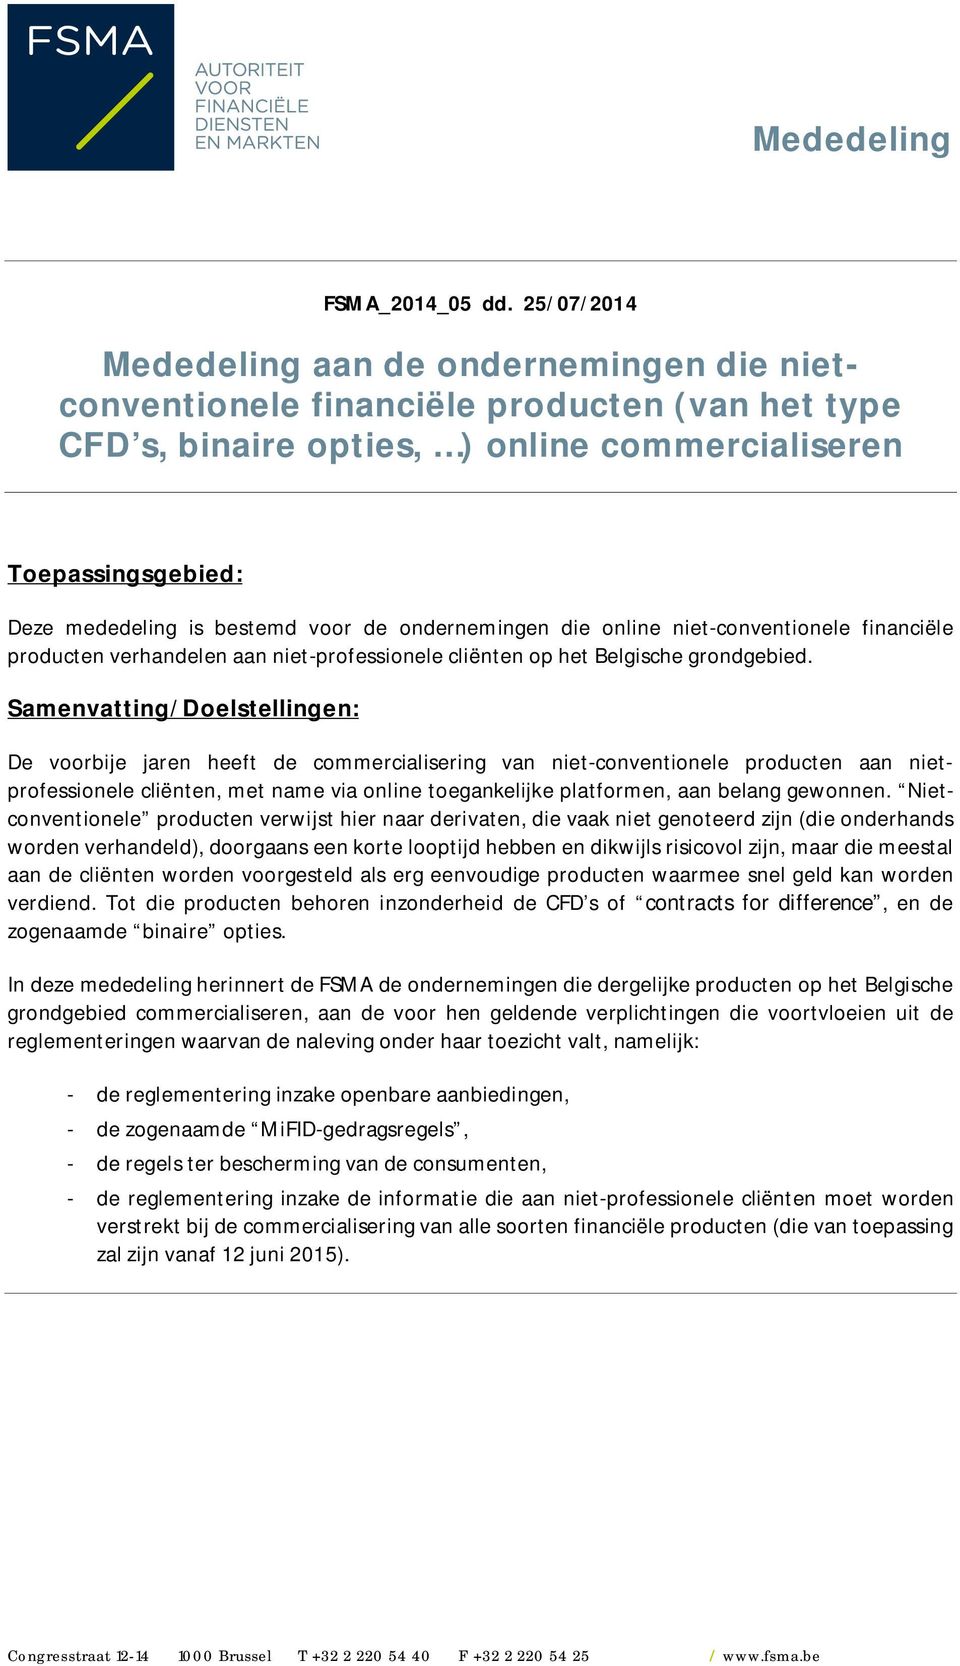 de ondernemingen die online niet-conventionele financiële producten verhandelen aan niet-professionele cliënten op het Belgische grondgebied.